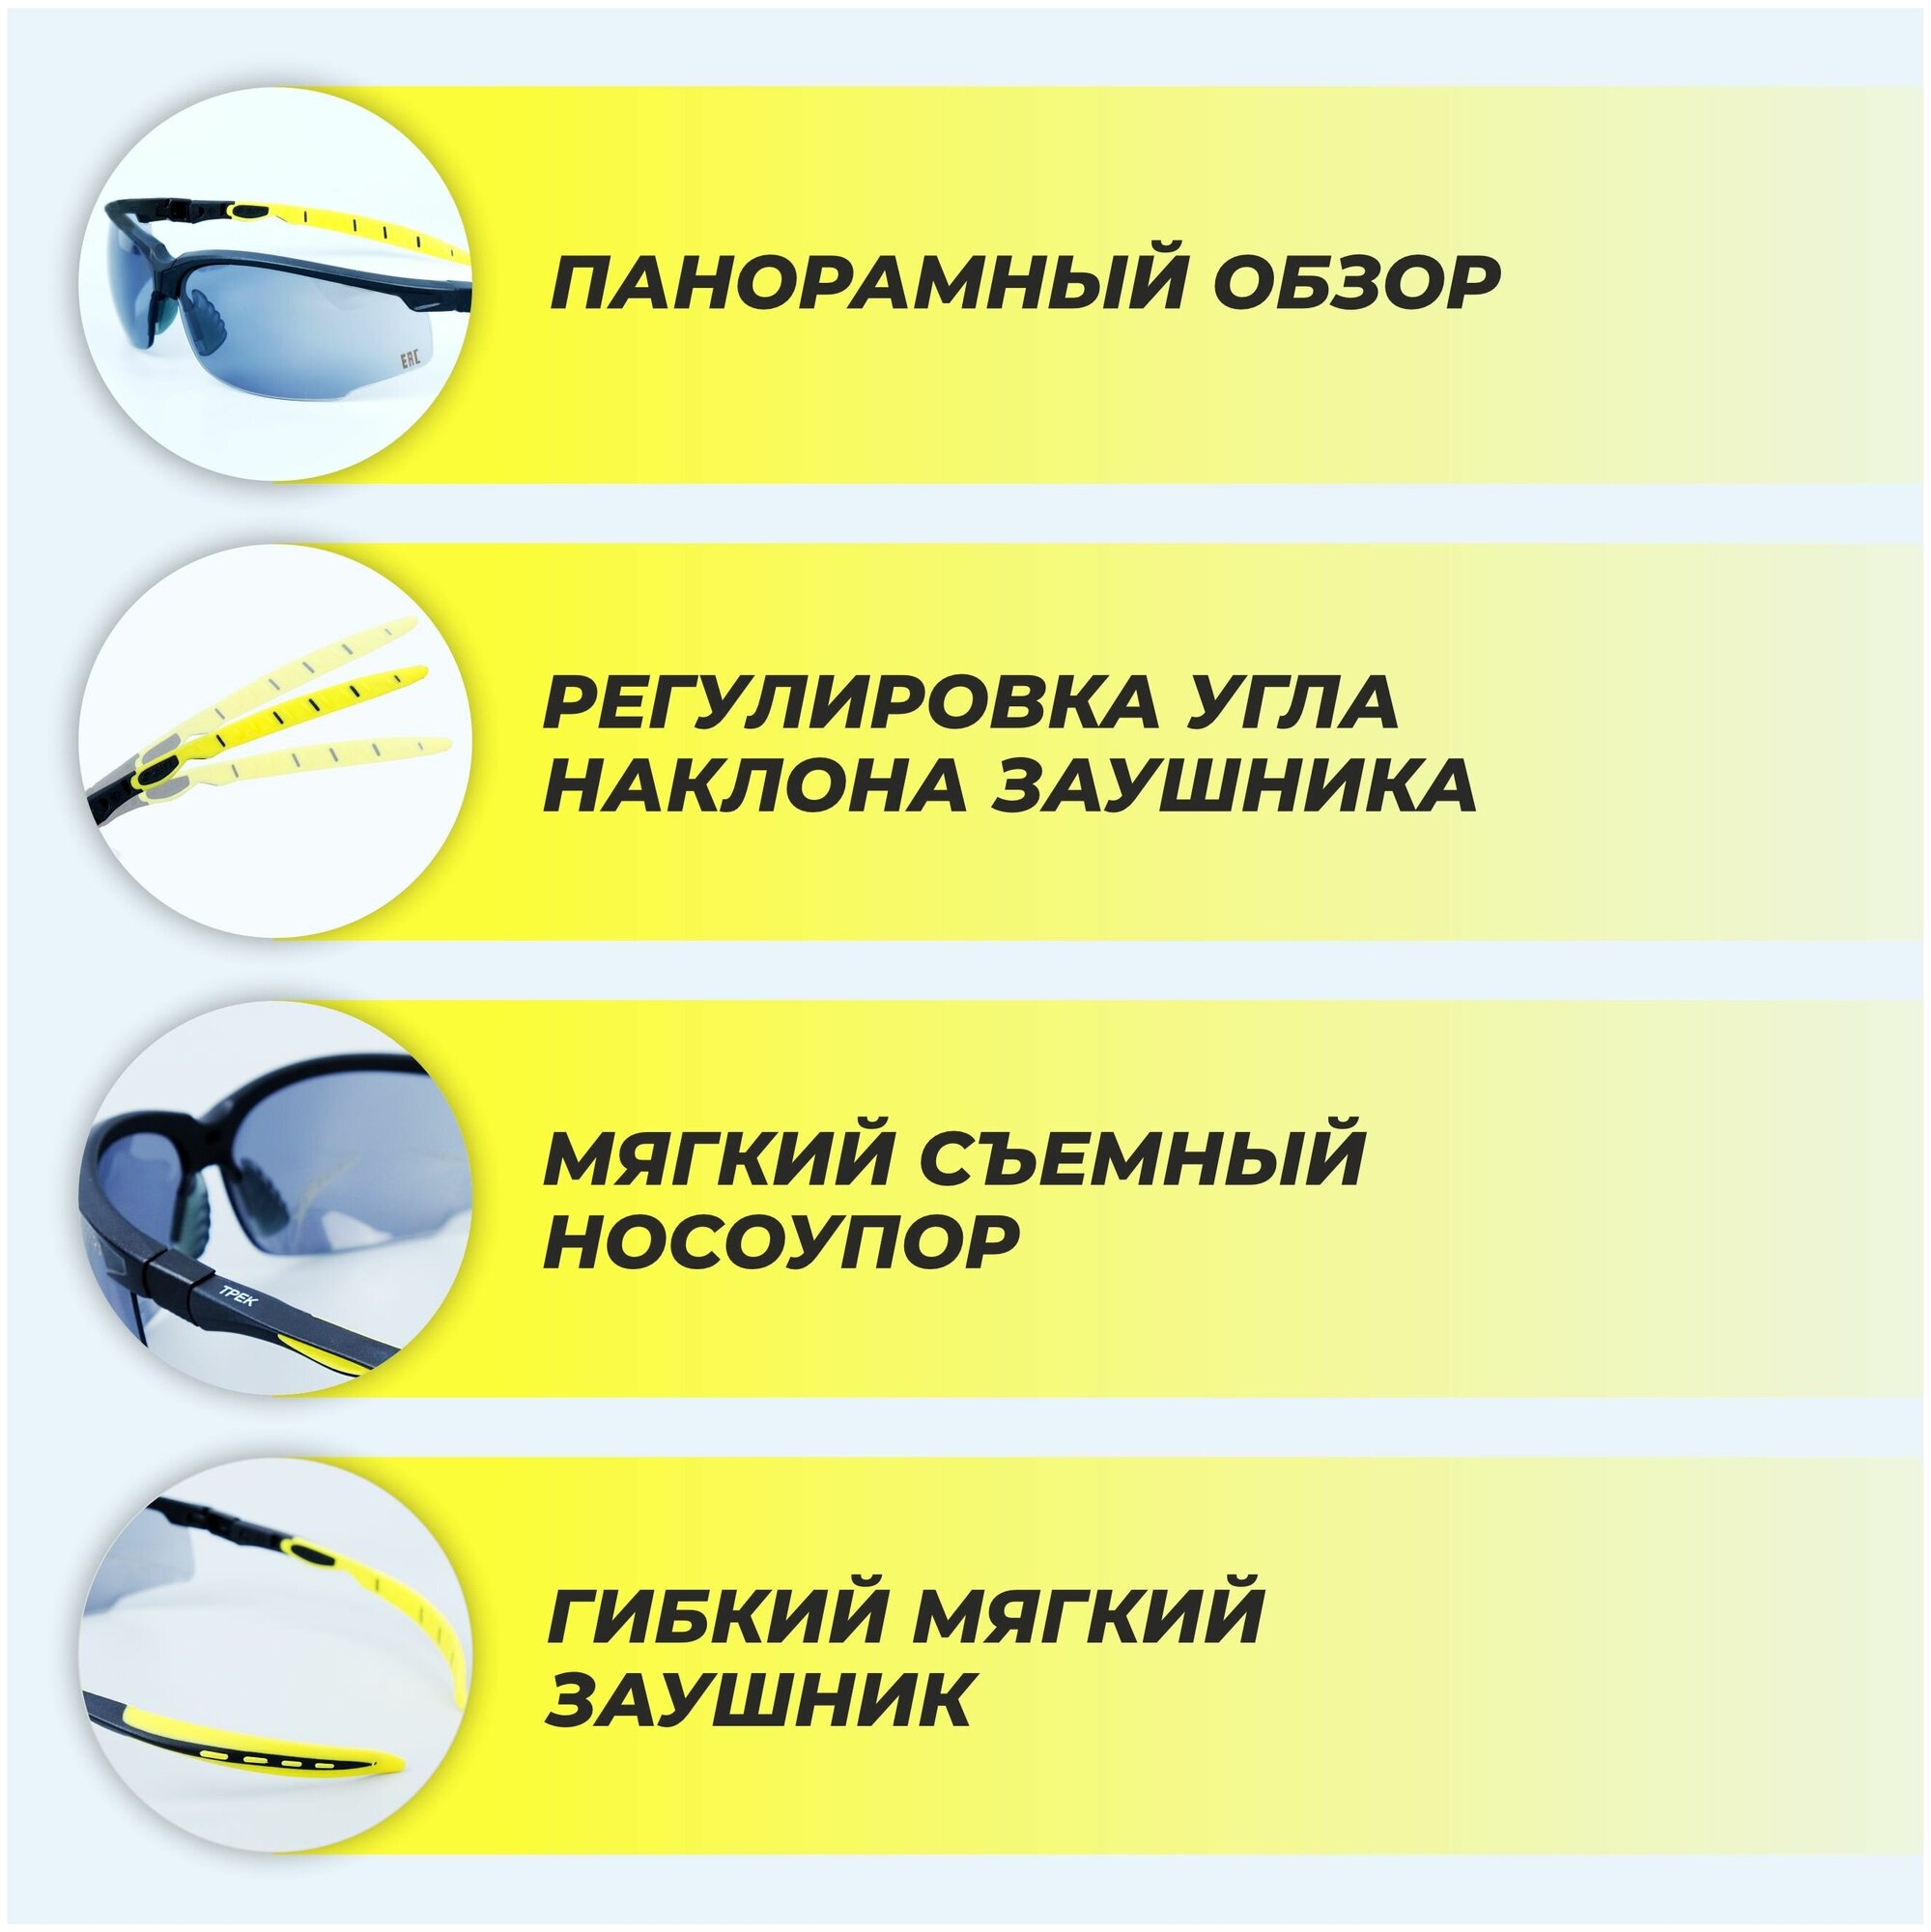 Очки защитные РОСОМЗ О52 Трек Nord, очки солнцезащитные